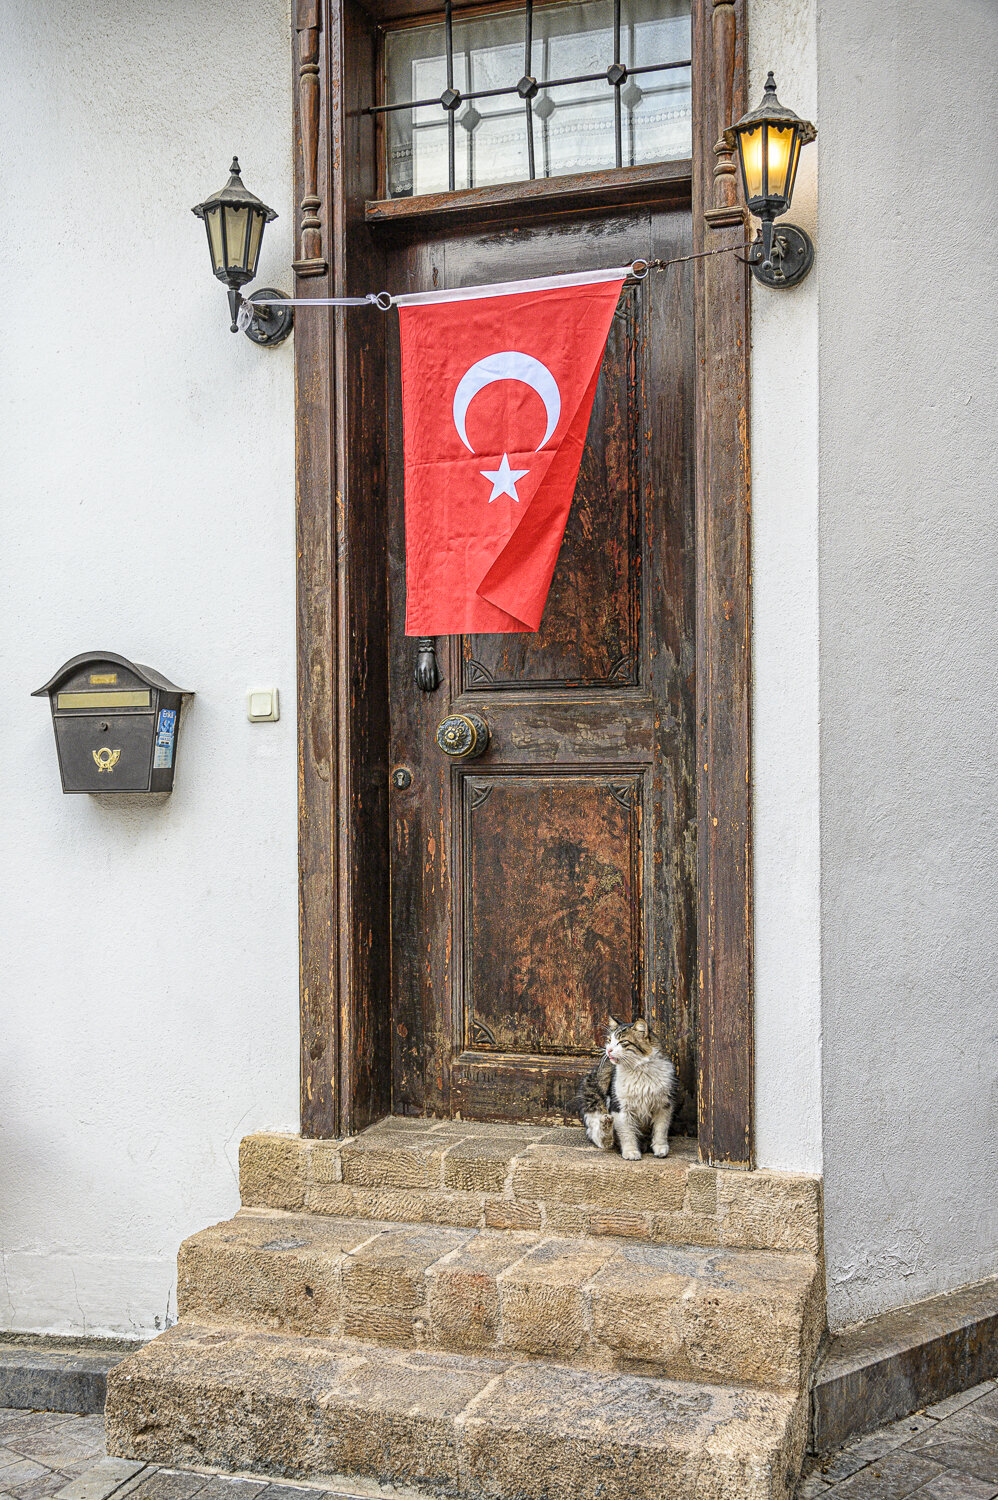 Waiting on a Friend, Antalya, Turkey